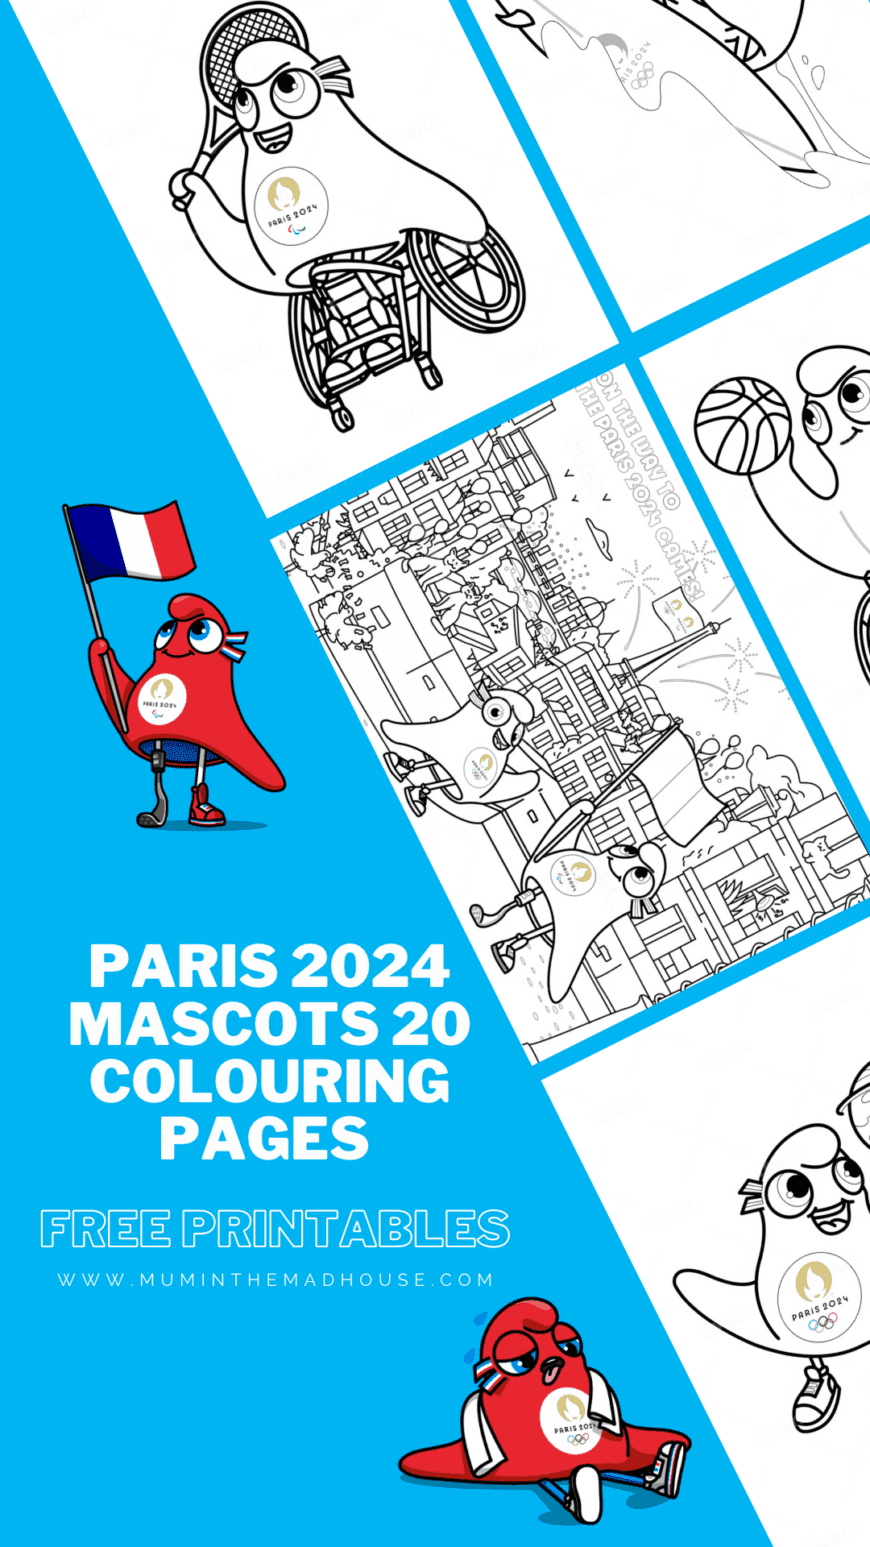 Paris 2024 Mascots Colouring Pages